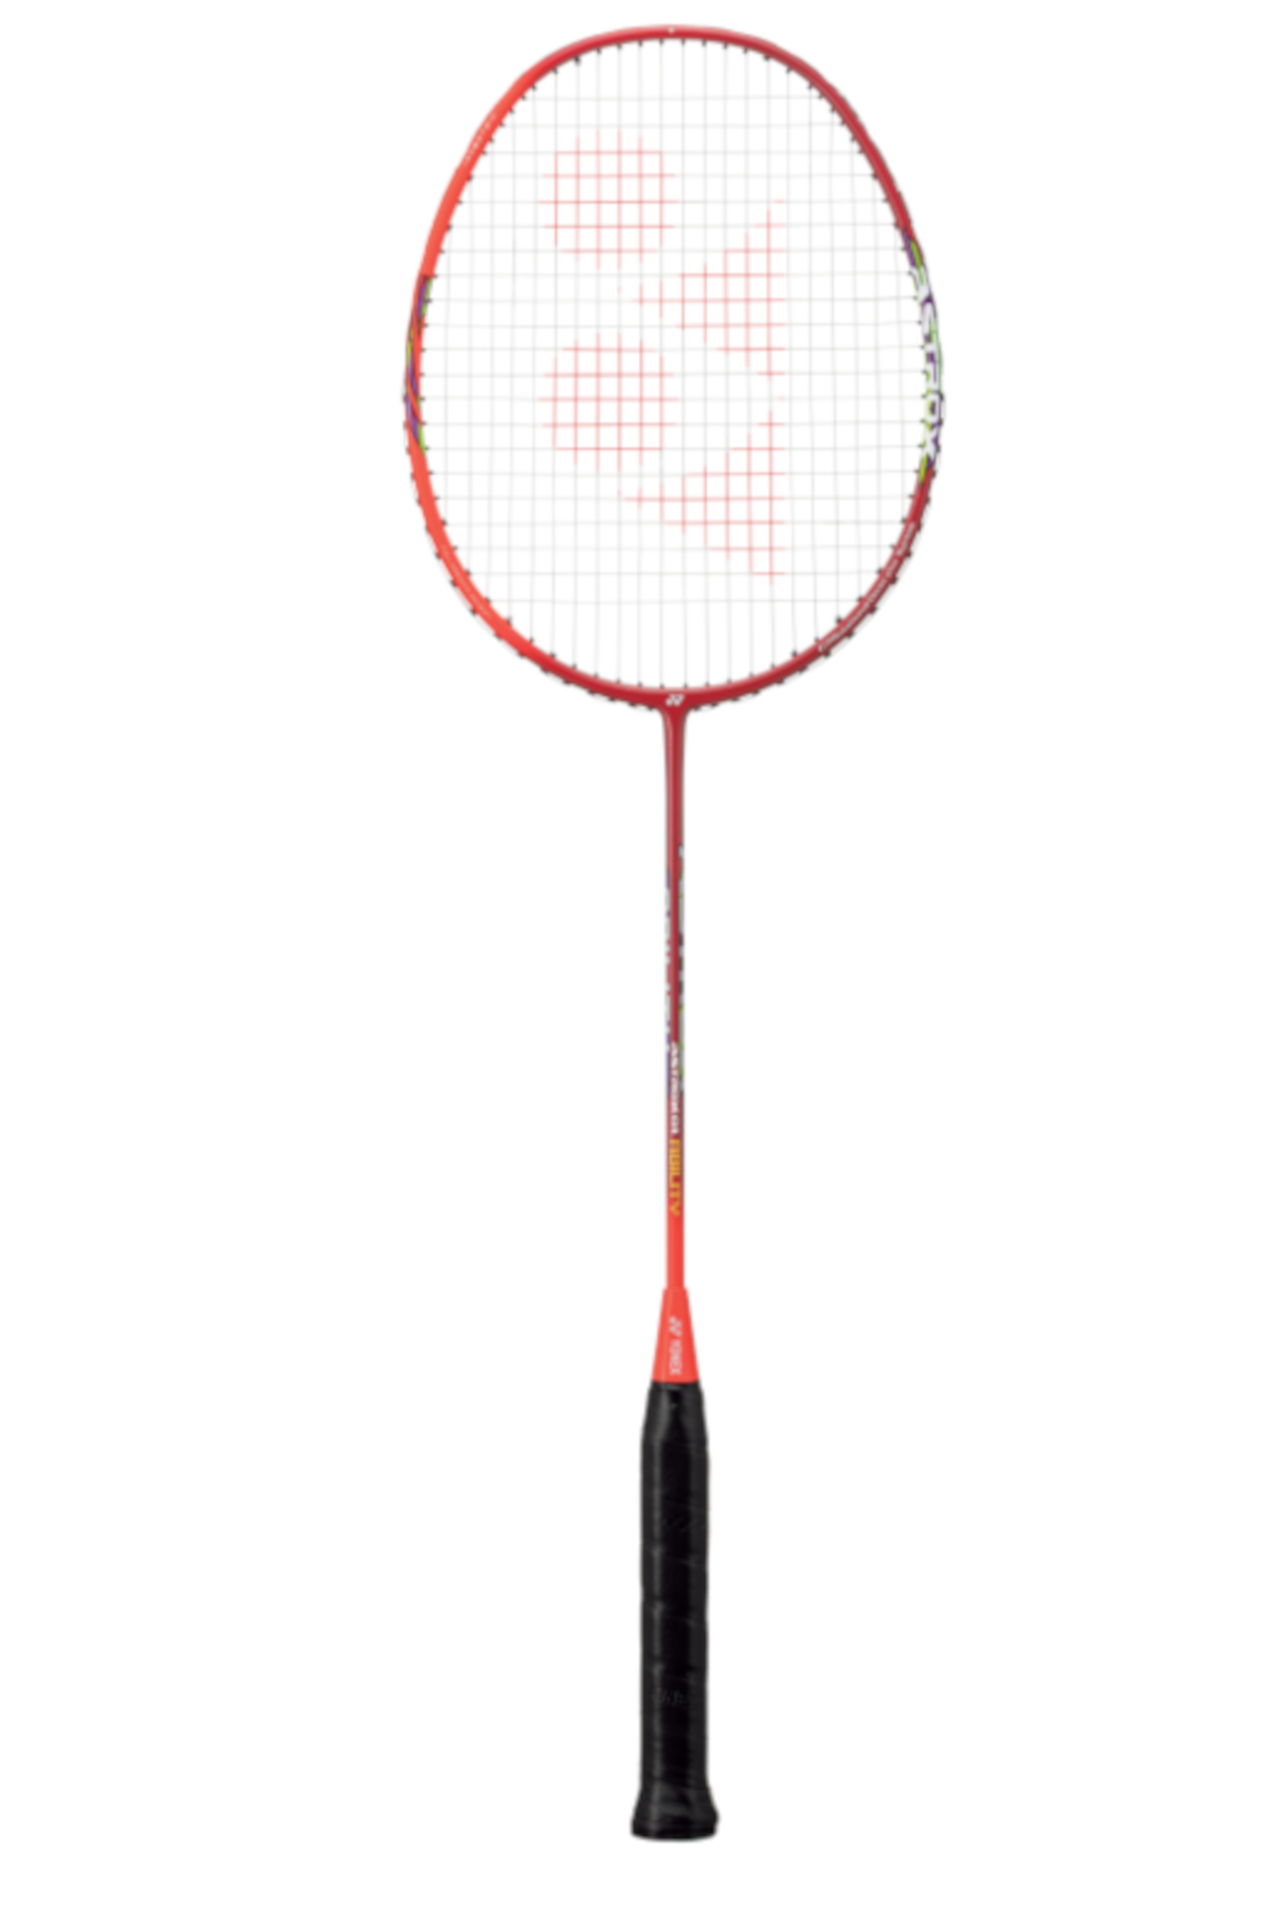 Astrox 01 Ability (83g / 4uG4)  Badminton Raketi - Kırmızı | Yonex